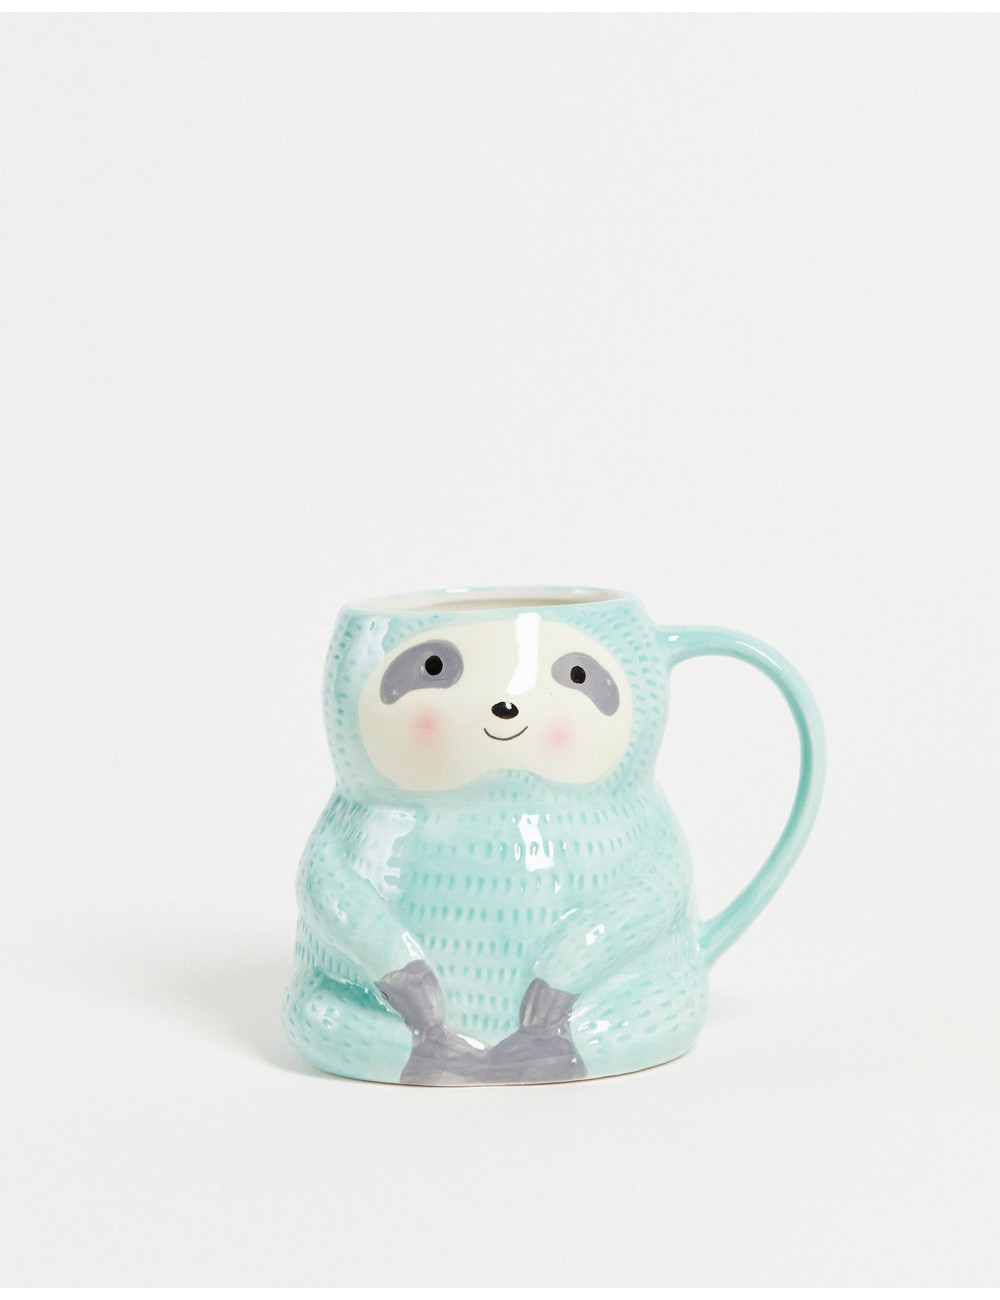 Sass and Belle sloth mug